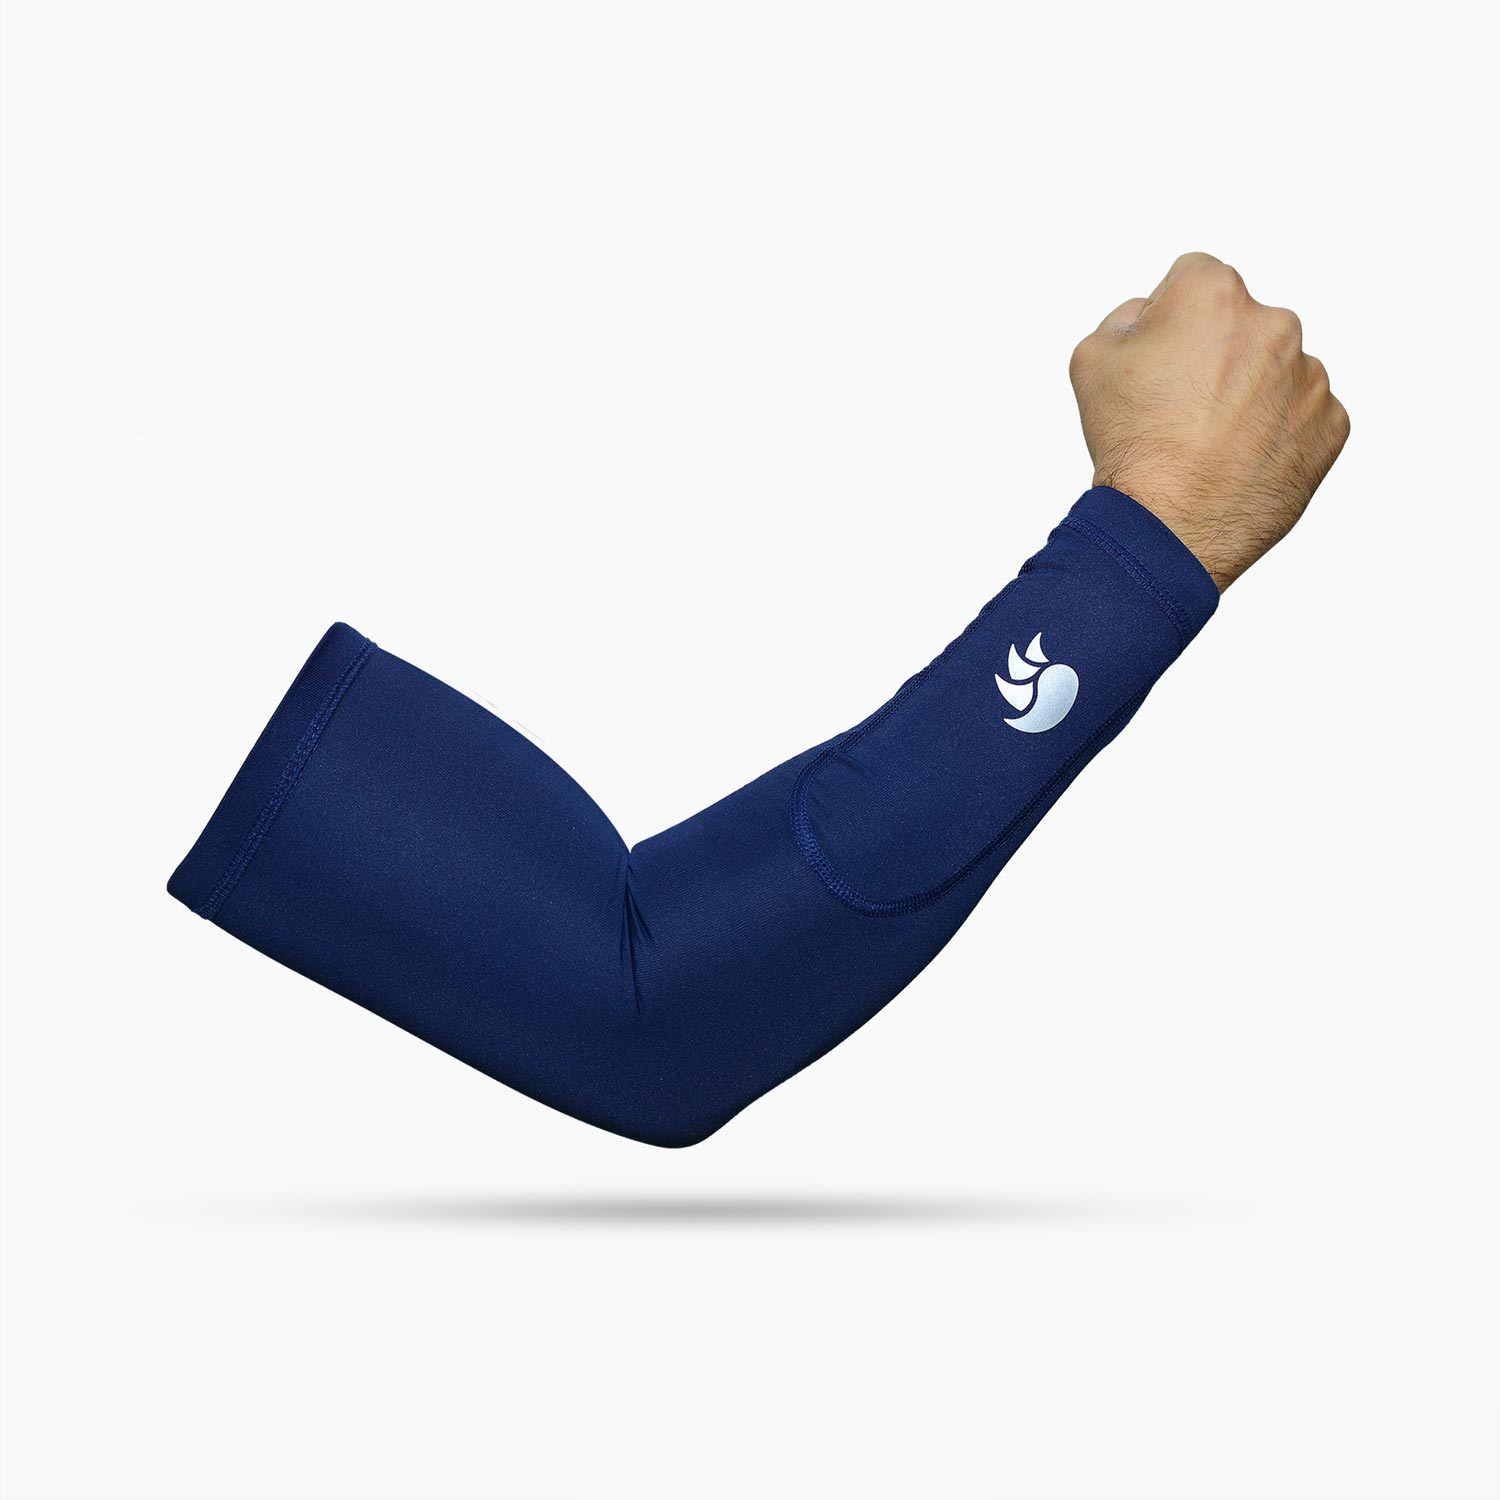 Buy Arm Sleeves Online  Cricket Arm Sleeves 